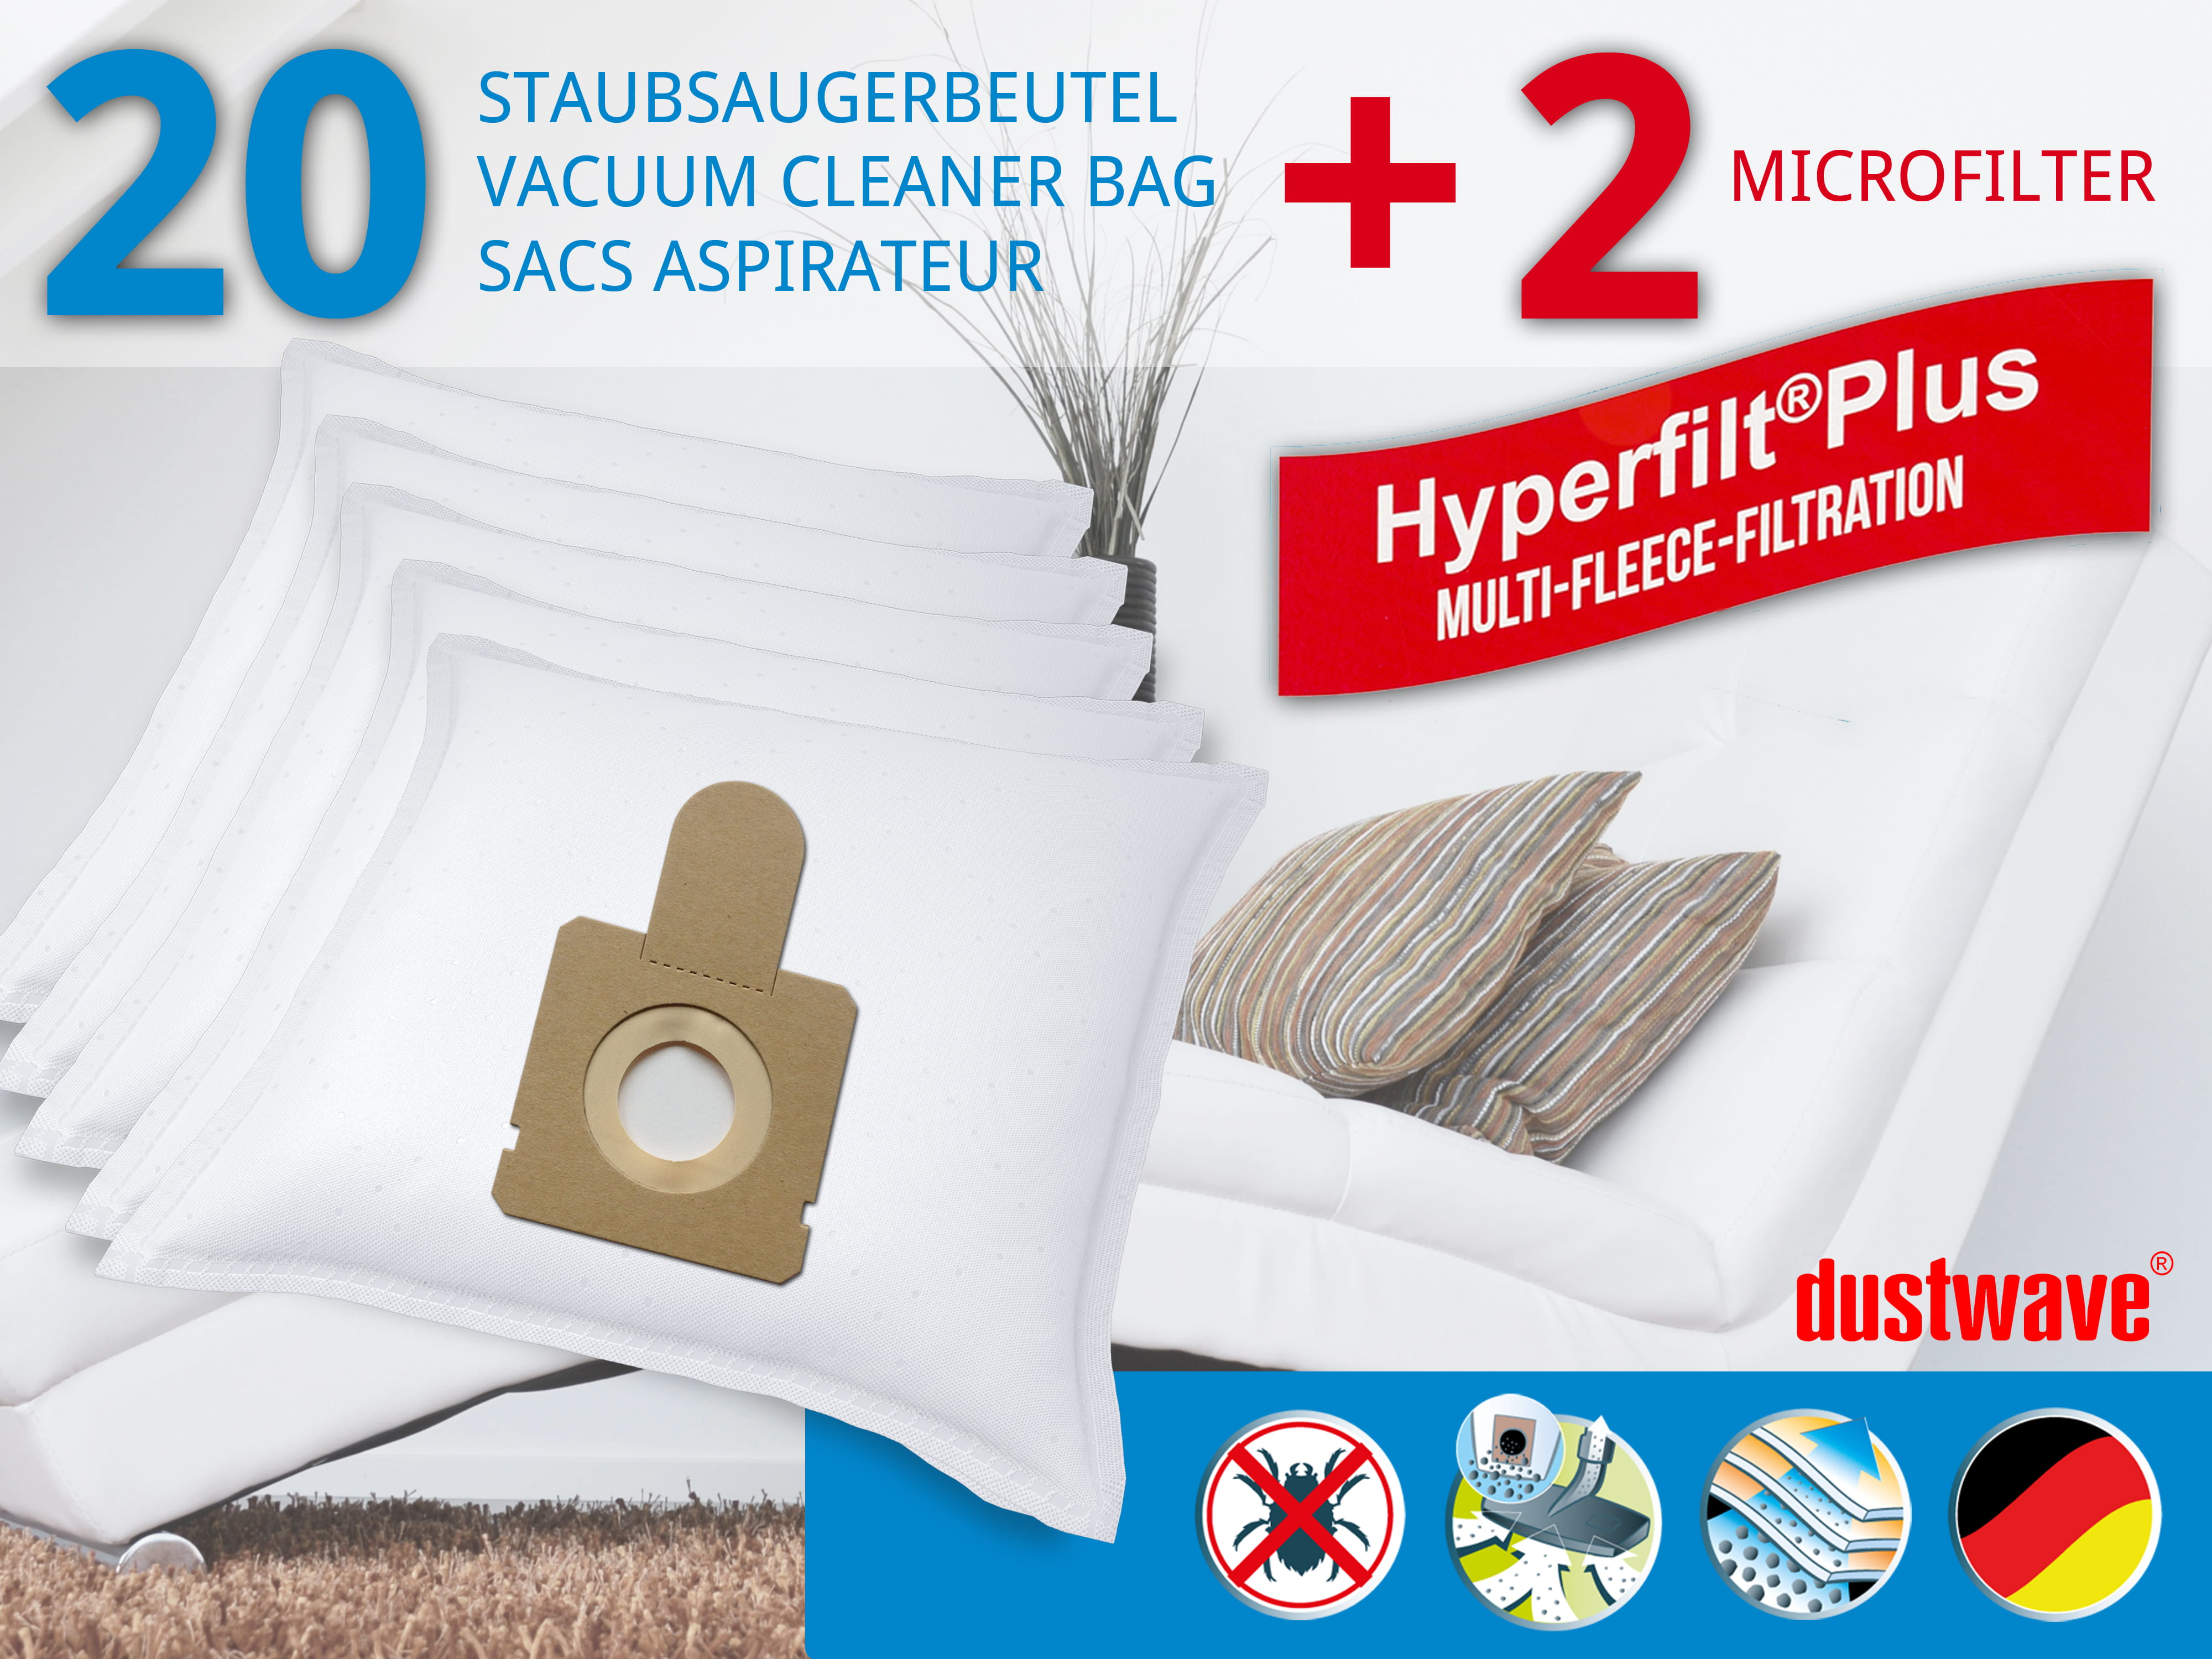 Dustwave® 20 Staubsaugerbeutel für Hoover CP70_CP09011 - hocheffizient, mehrlagiges Mikrovlies mit Hygieneverschluss - Made in Germany